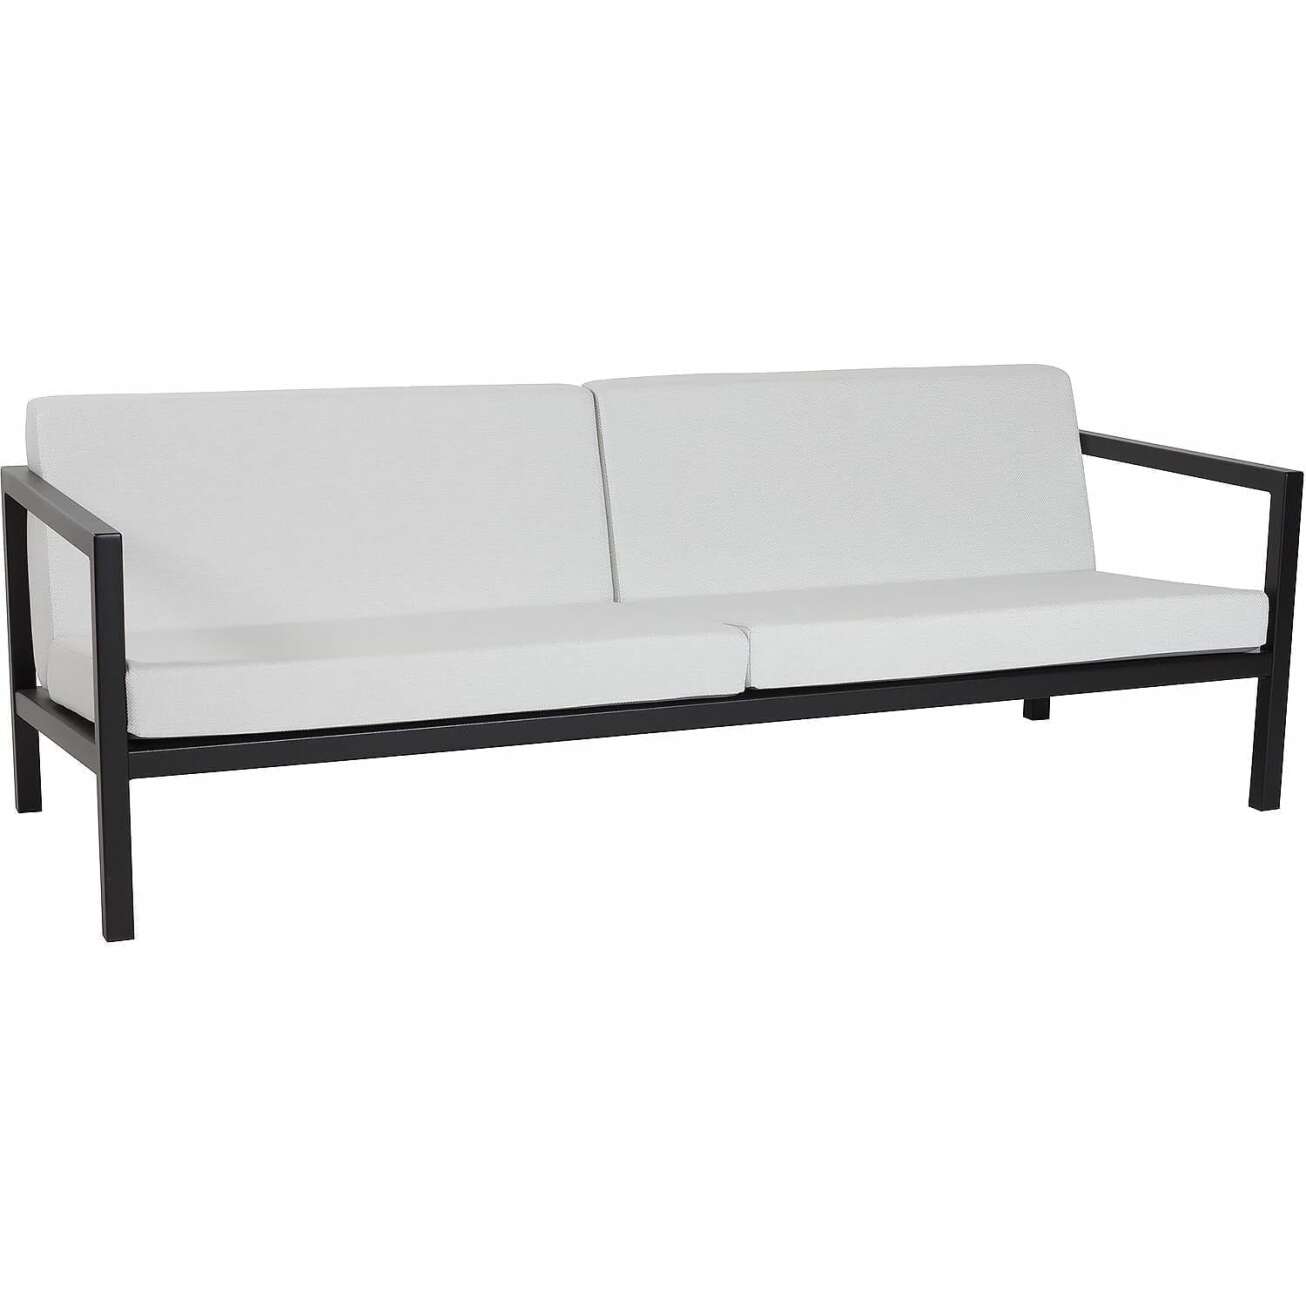 Sundays Frame 3-seter sofa i sort aluminium med hvite puter